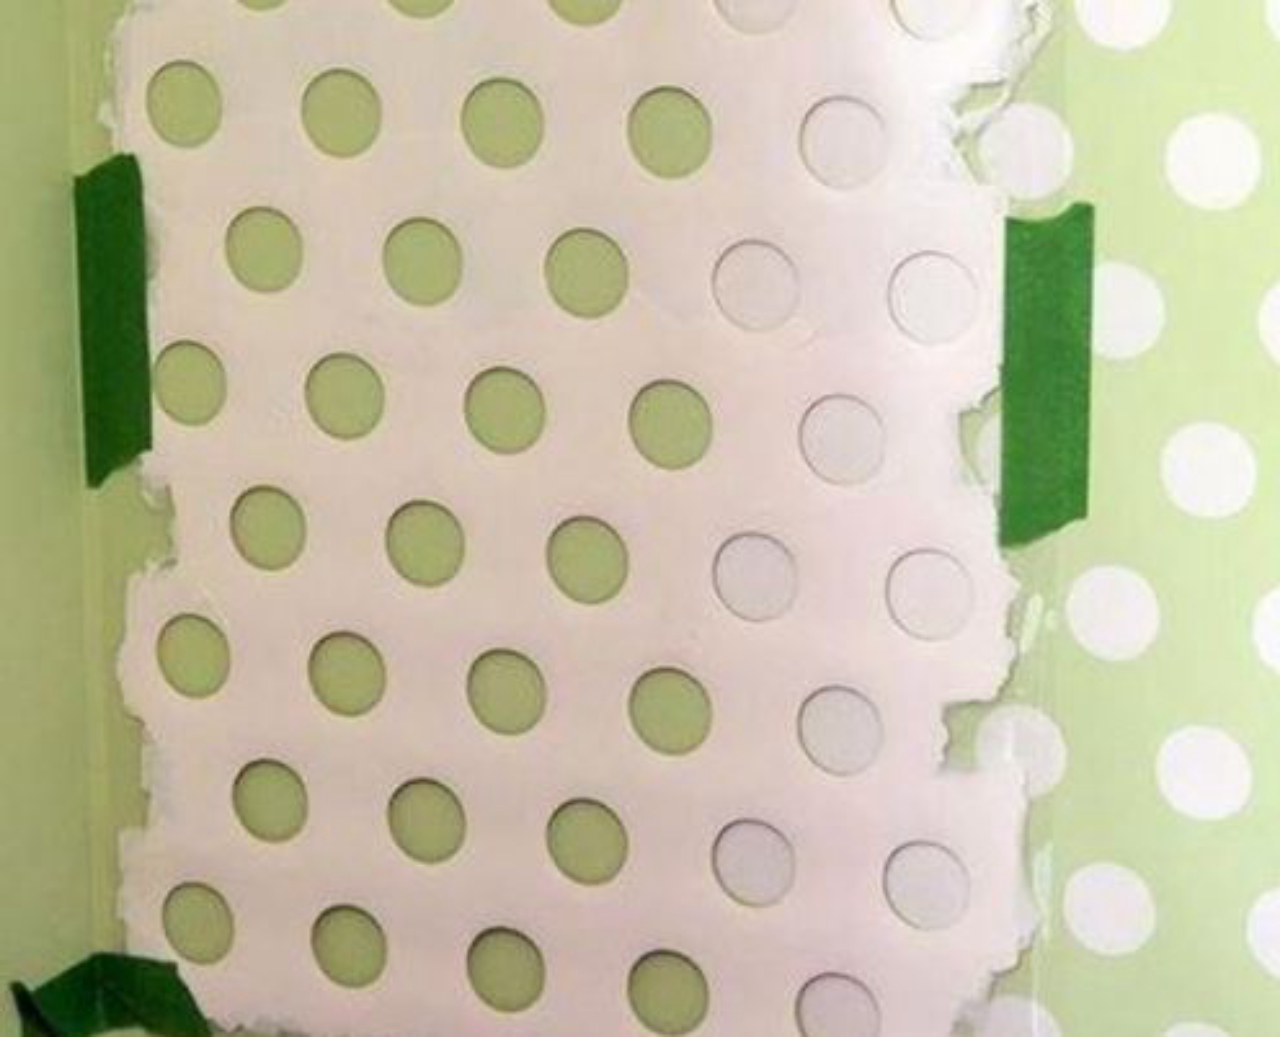 Criar um gabarito usando cartolina ou papelão é um jeito fácil de criar padrões nas paredes. Foto: Pinterest